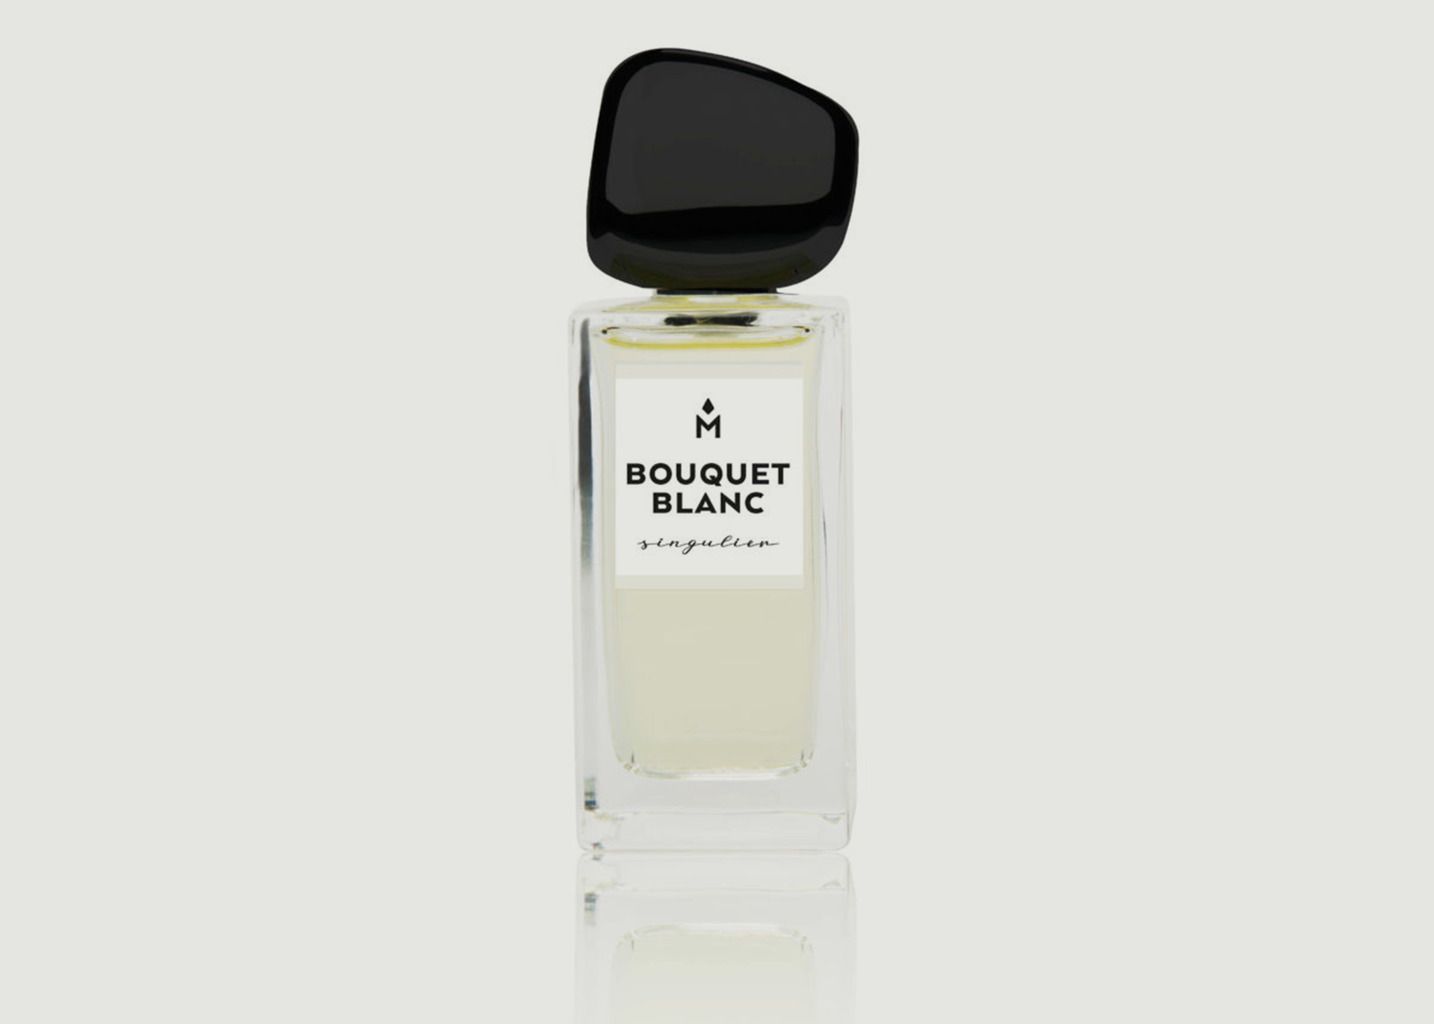 Bouquet Blanc 50ml Perfume - Ausmane Paris